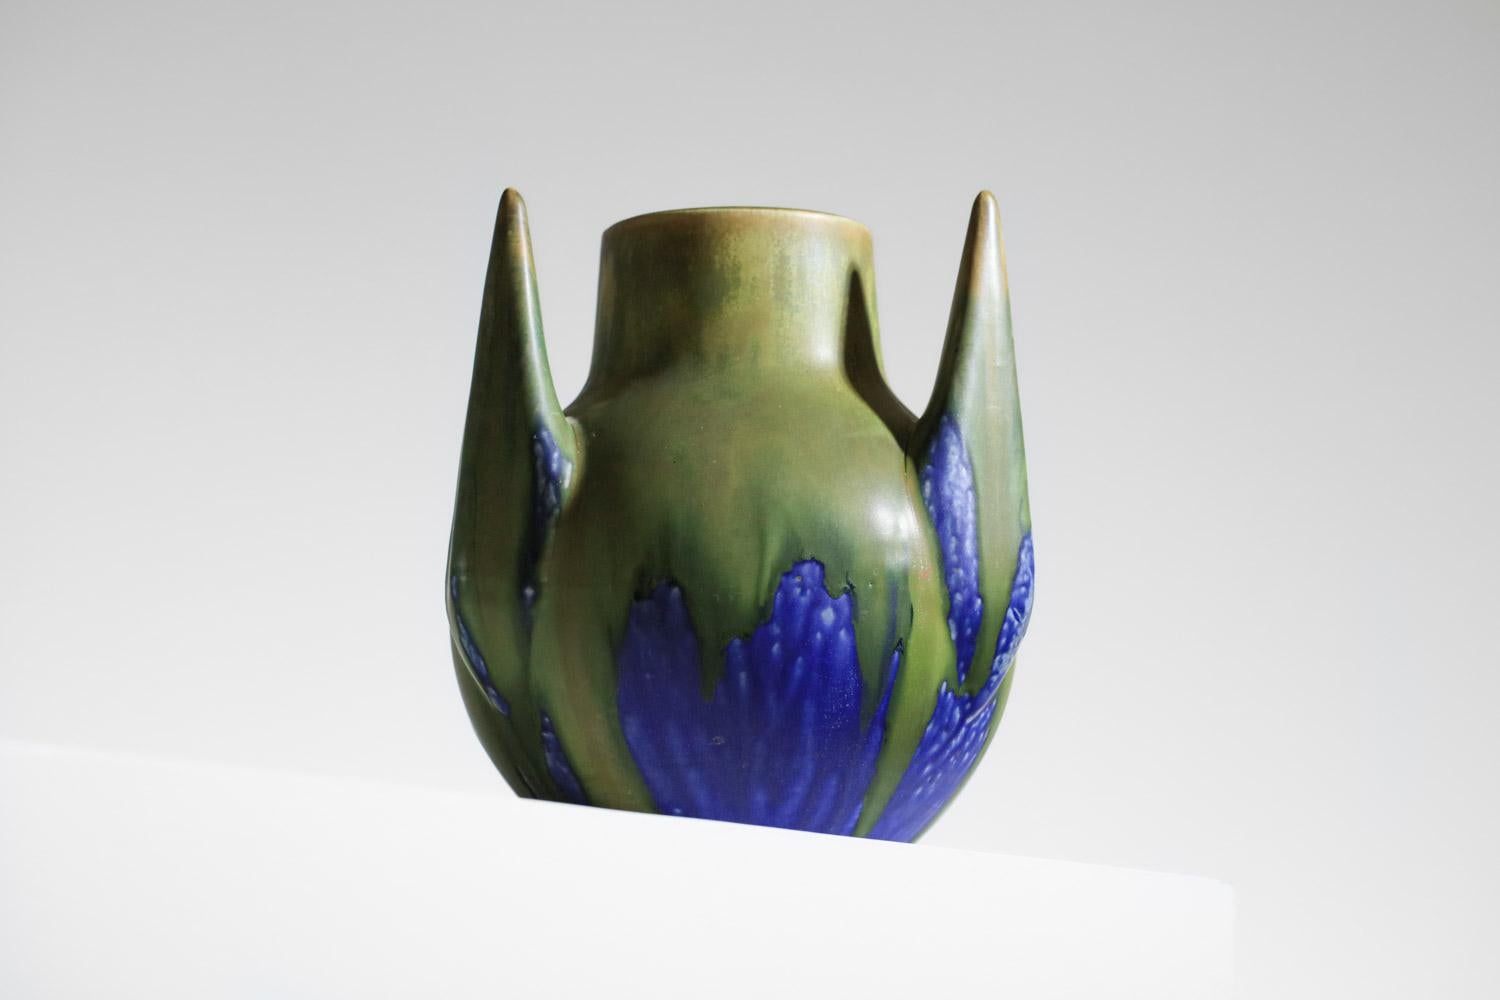 Keramikvase aus den 1920er Jahren des französischen Künstlers Gilbert Méténier. Sehr originelle freie Form für diese emaillierte Vase in Blau- und Grüntönen. Sehr guter Vintage-Zustand, Signatur des Künstlers auf der Unterseite der Vase (siehe